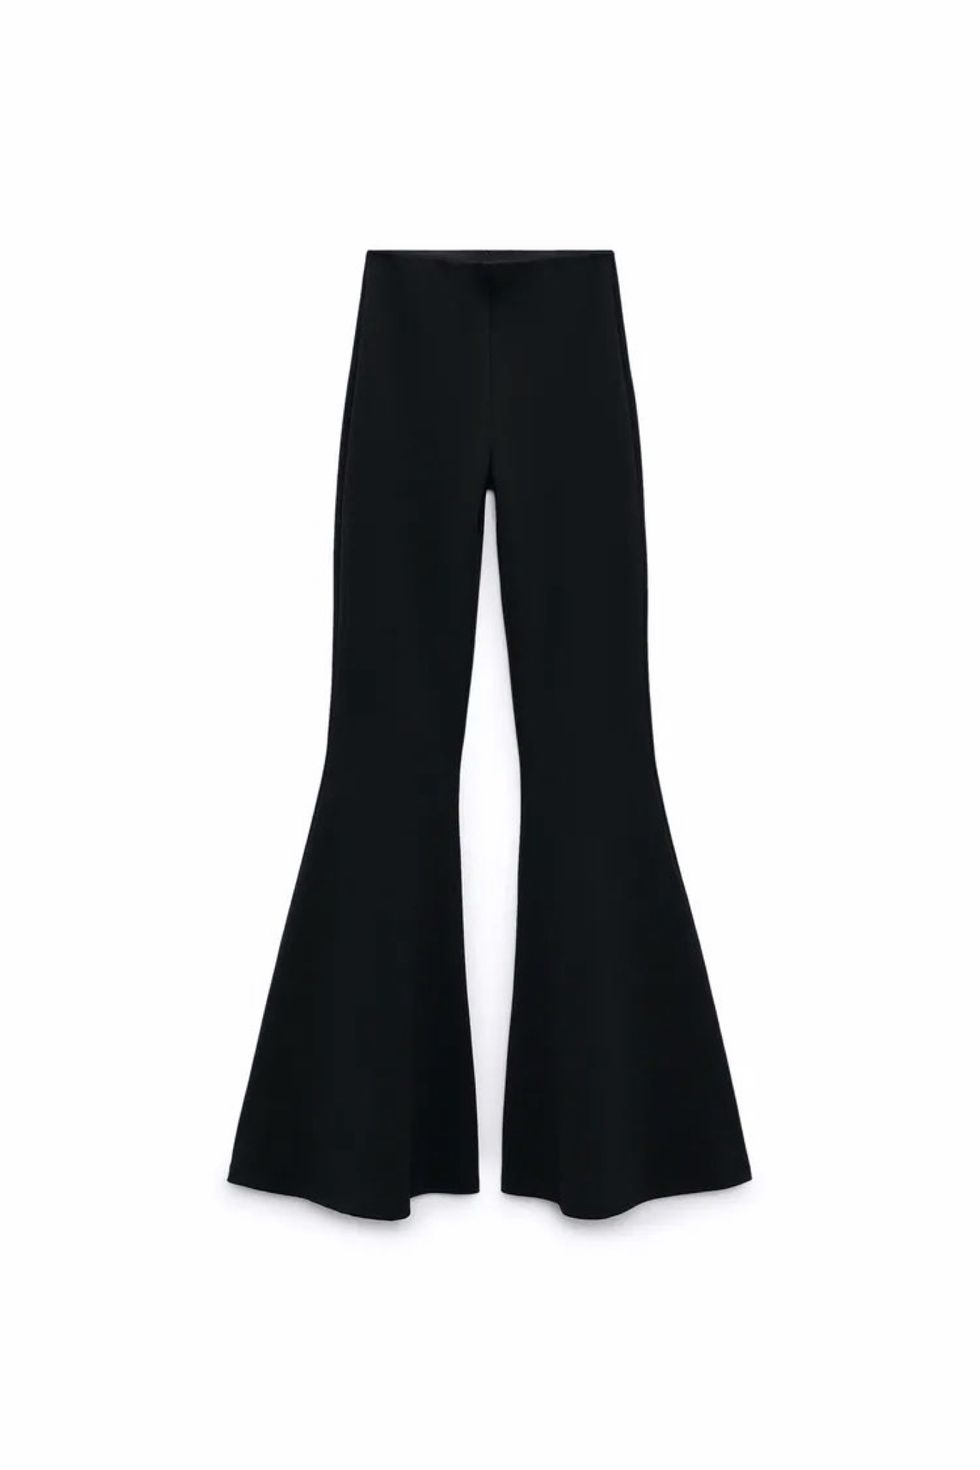 Tipazo con el nuevo diseño de estos pantalones campana de Zara